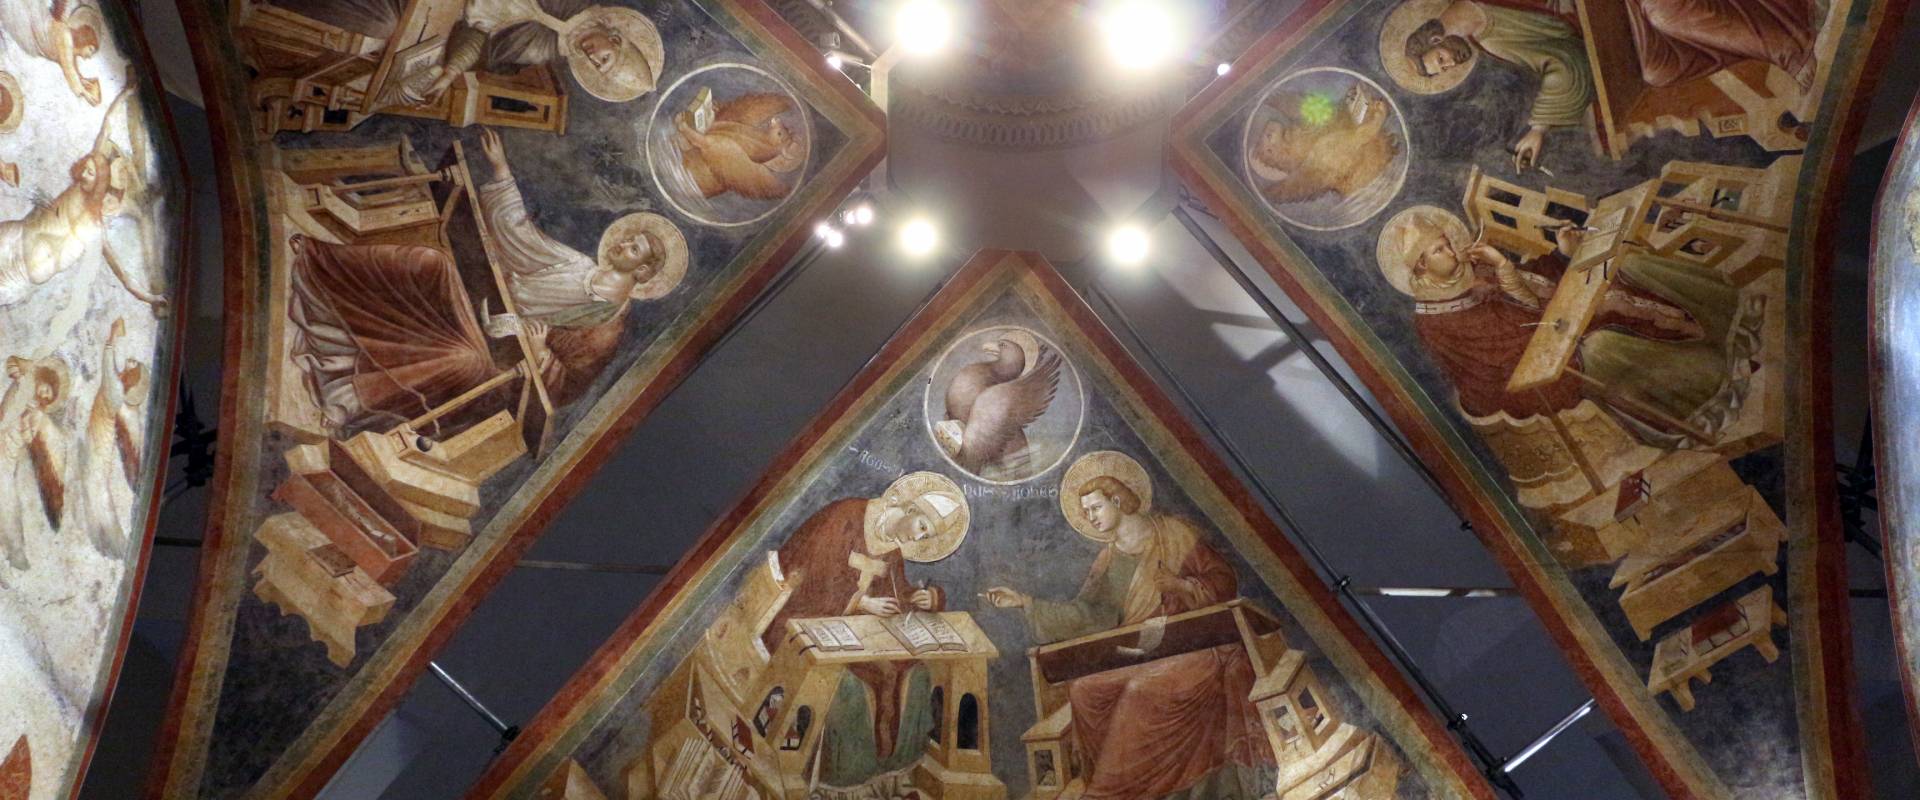 Pietro da rimini e bottega, affreschi dalla chiesa di s. chiara a ravenna, 1310-20 ca., volta con evangelisti e dottori 01 photo by Sailko